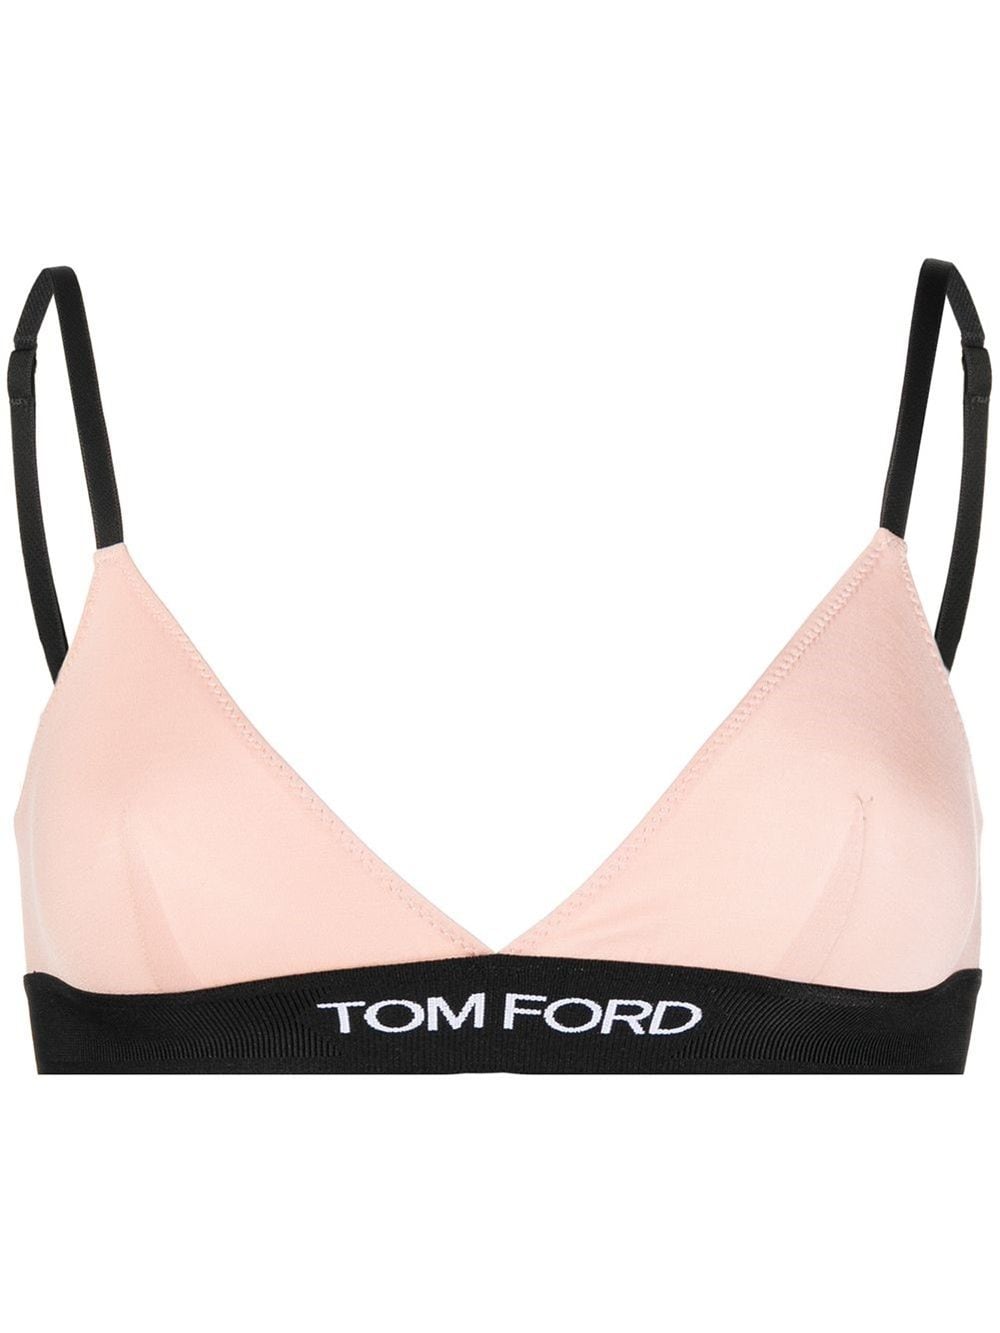 Tom Ford - Sports bra White - The Corner